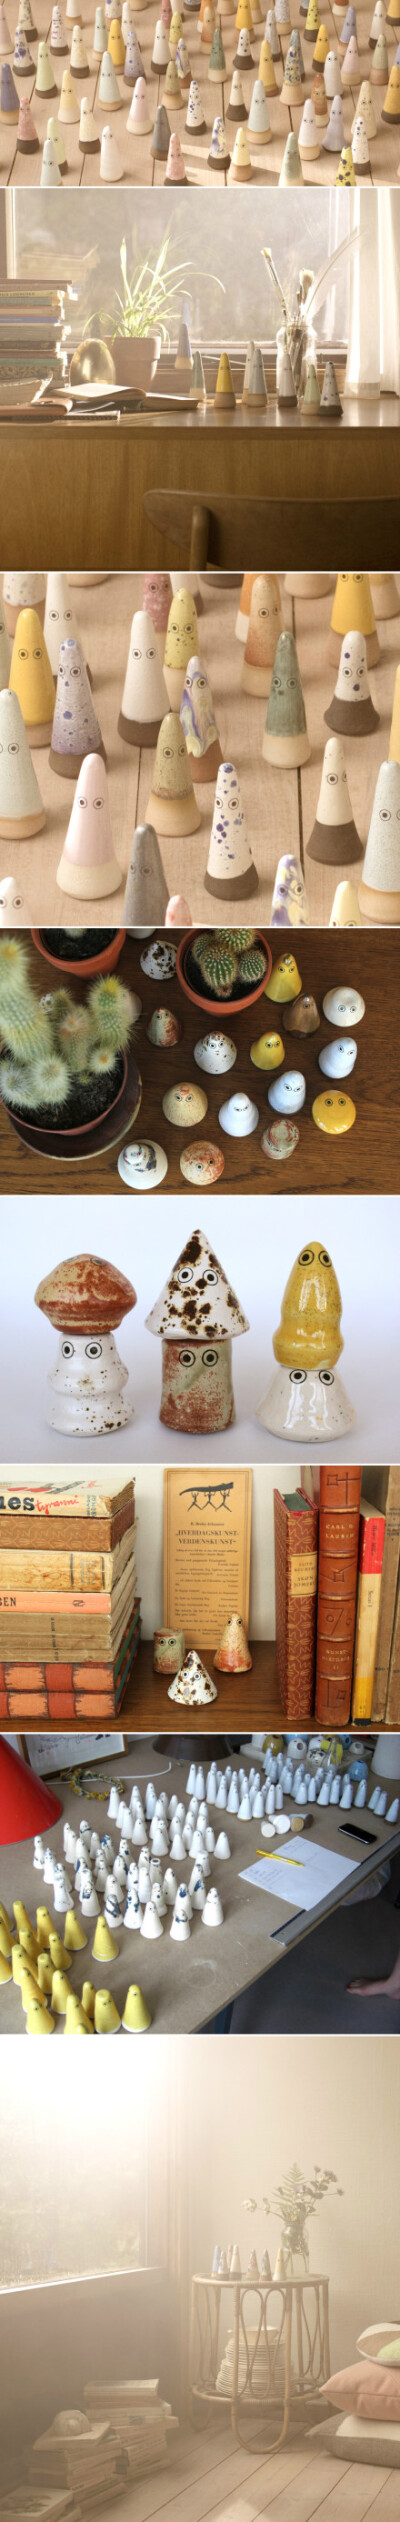 在日本神话中有很多小精灵形象，丹麦设计师Anders Arhoj以此为原型，设计了这些陶瓷小精灵，让它们自由地霸占人类的生活空间。很温馨的想法，也很可爱的设计。这些小精灵都是手作陶器，经过手工上釉与低焙烧窑等工序…